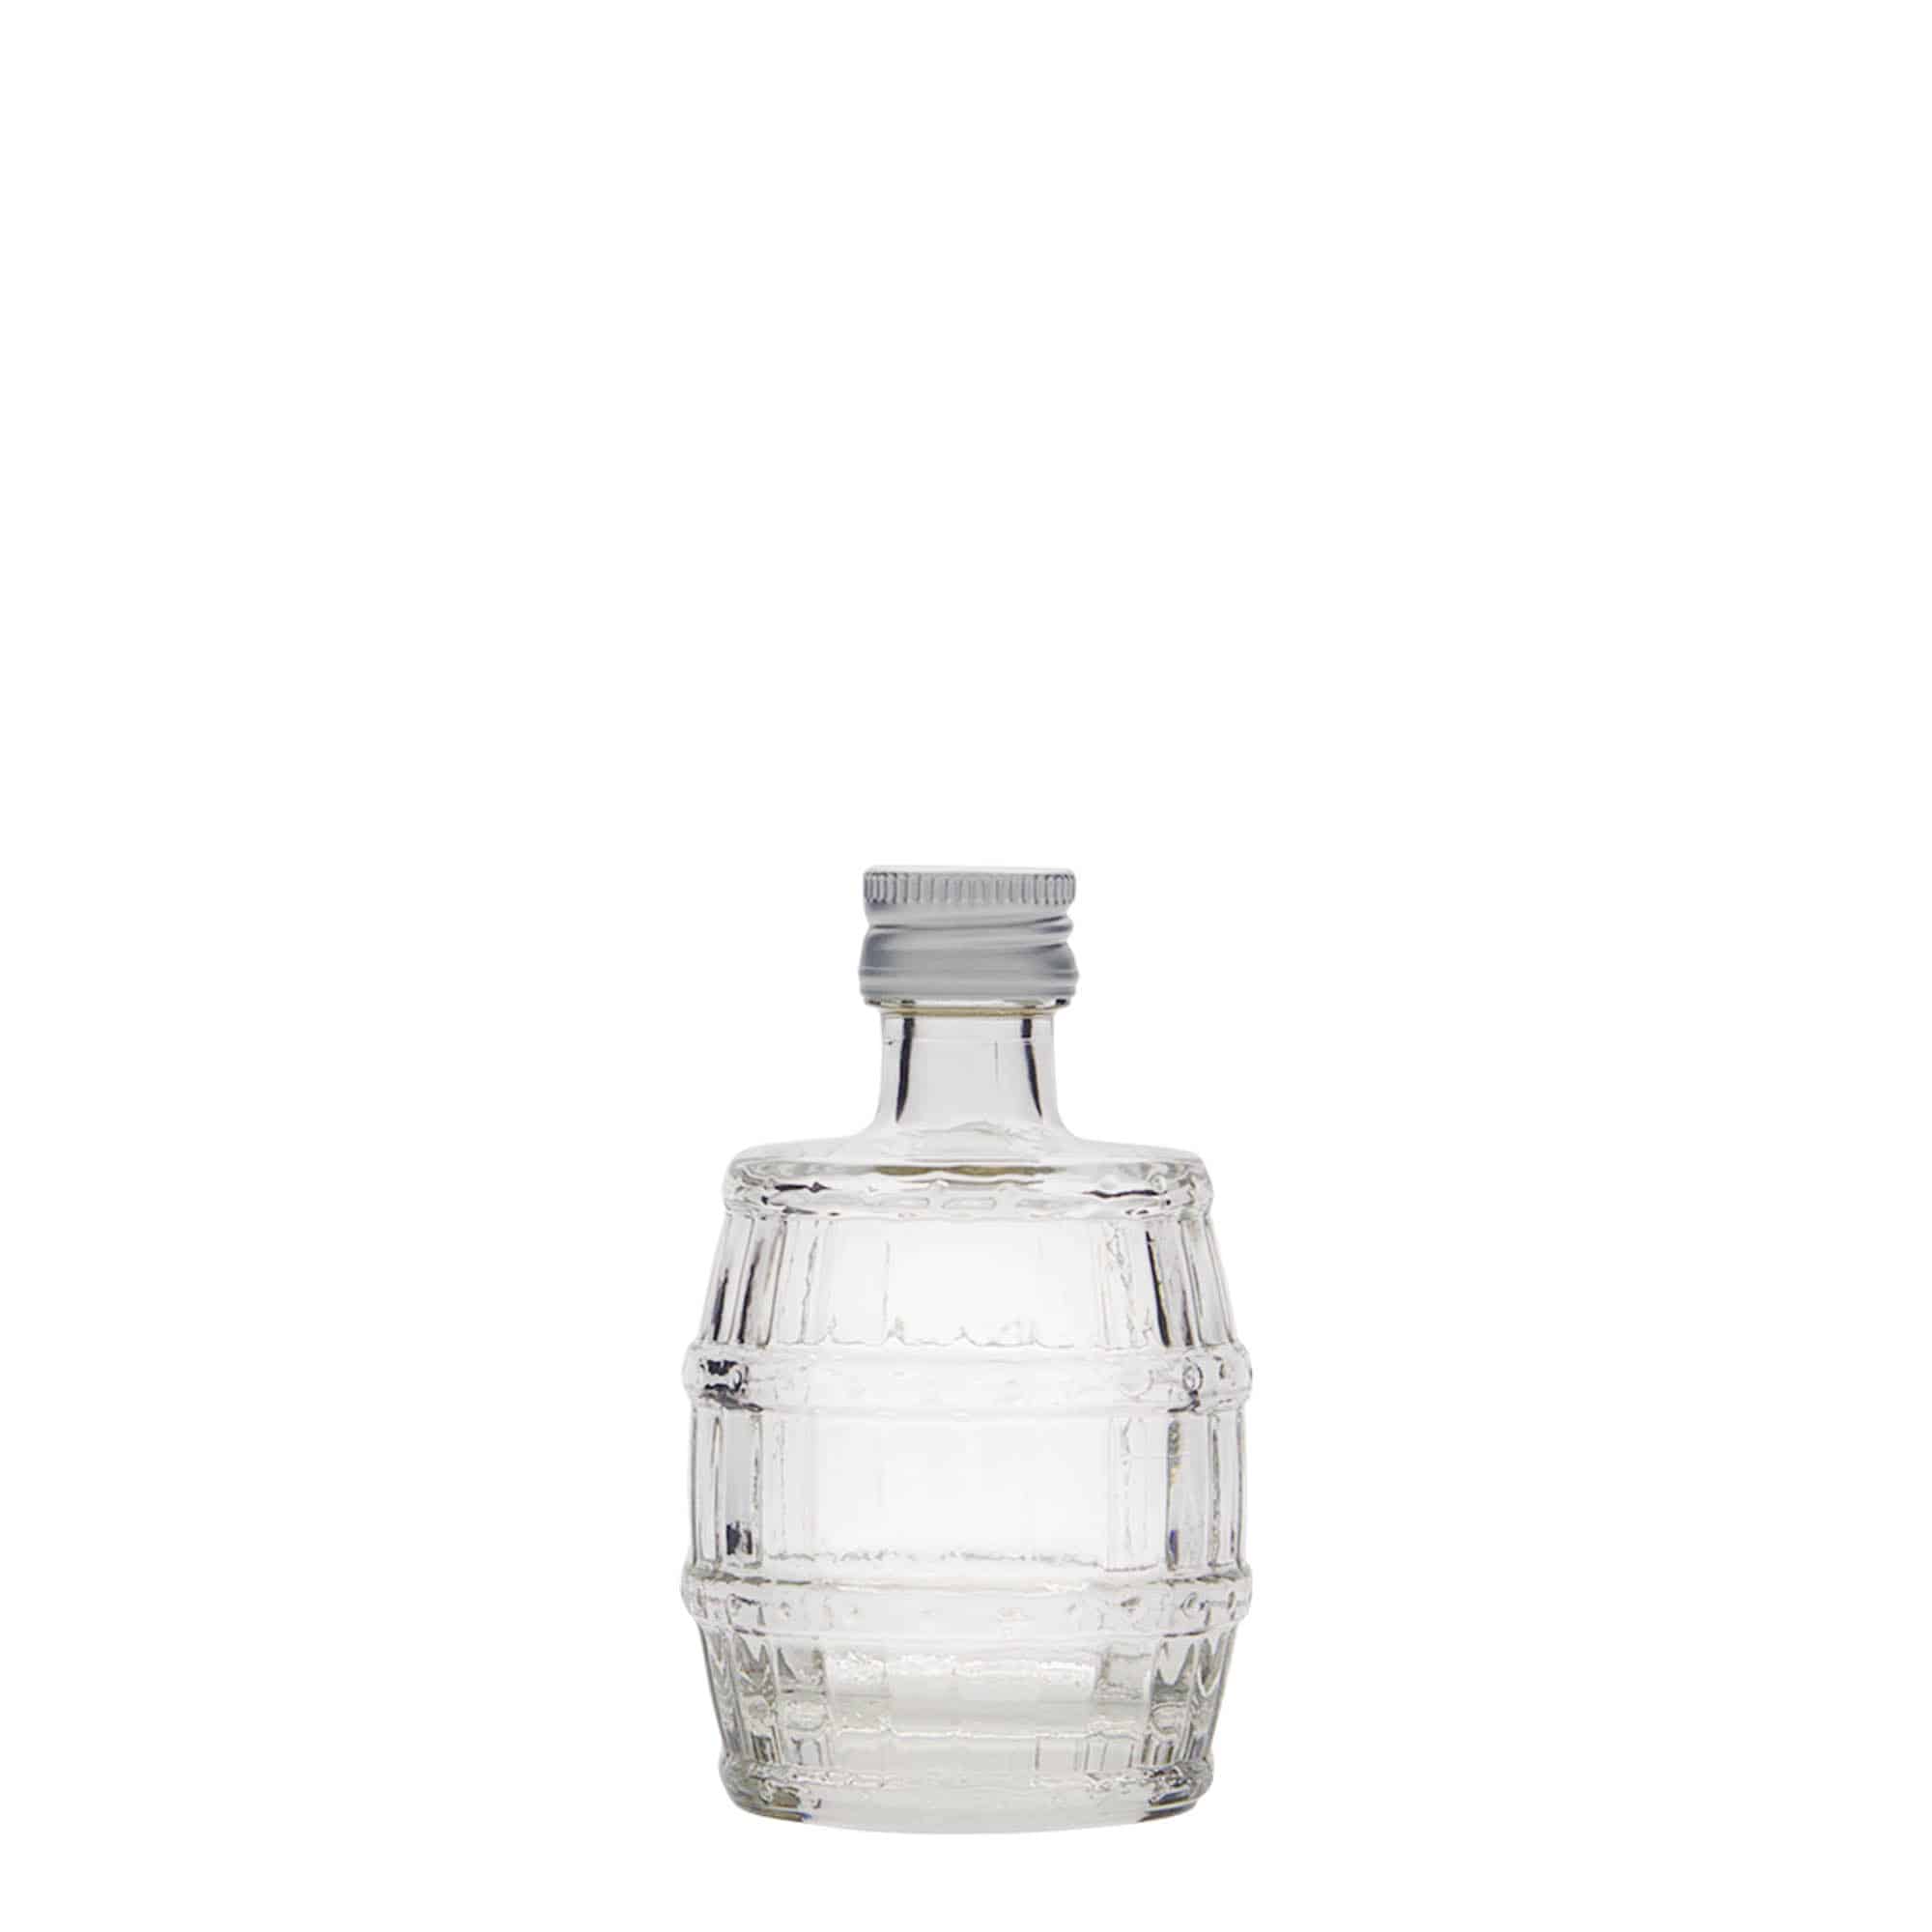 50 ml glass bottle 'Fass', closure: PP 18